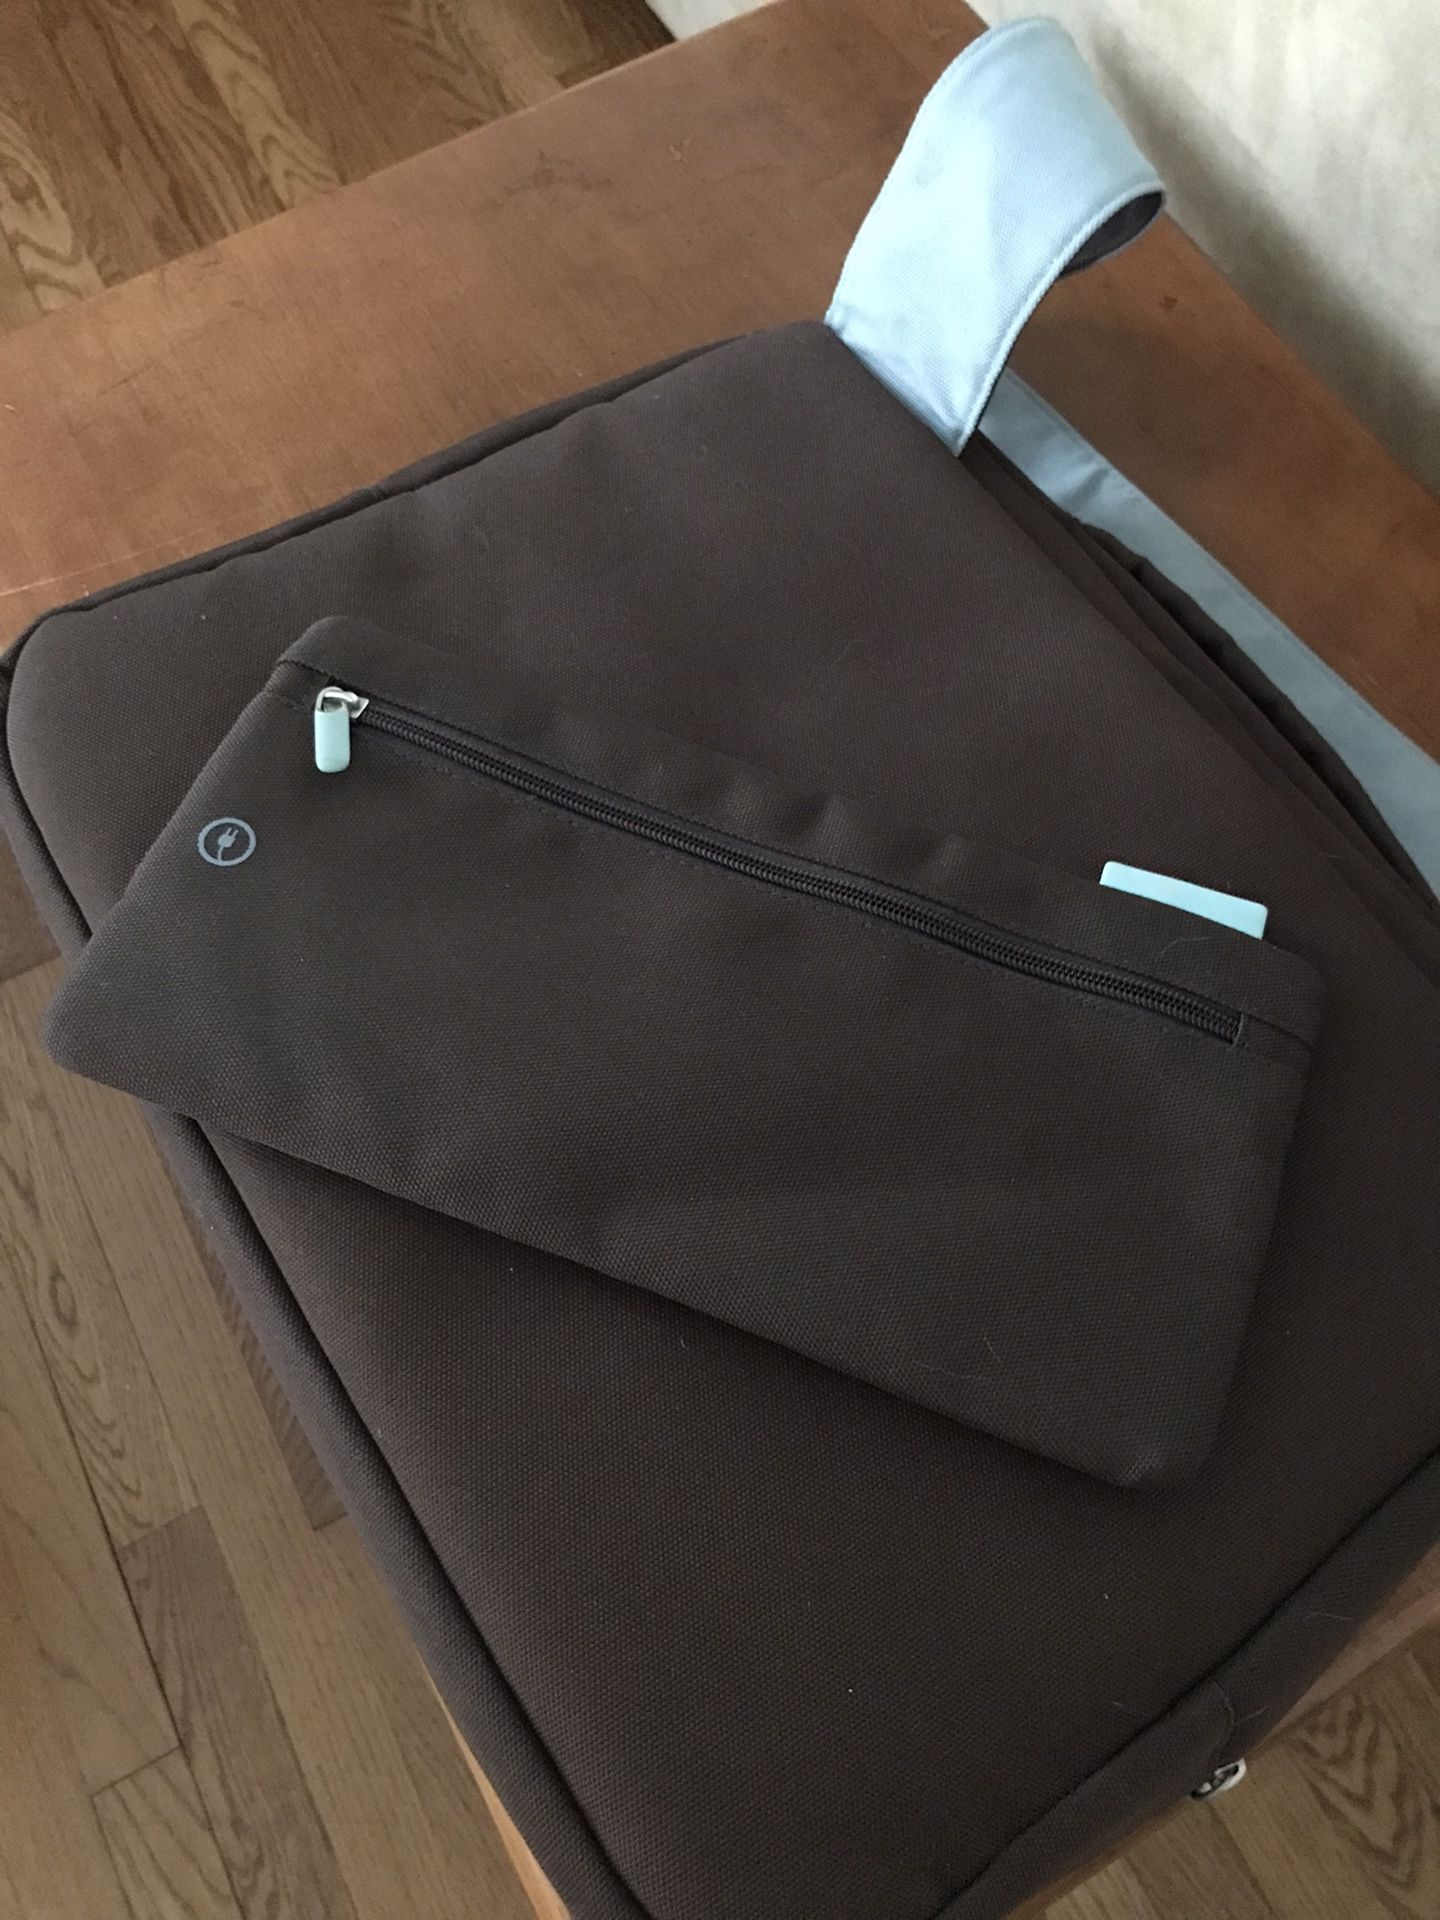 Belkin Laptop Bag